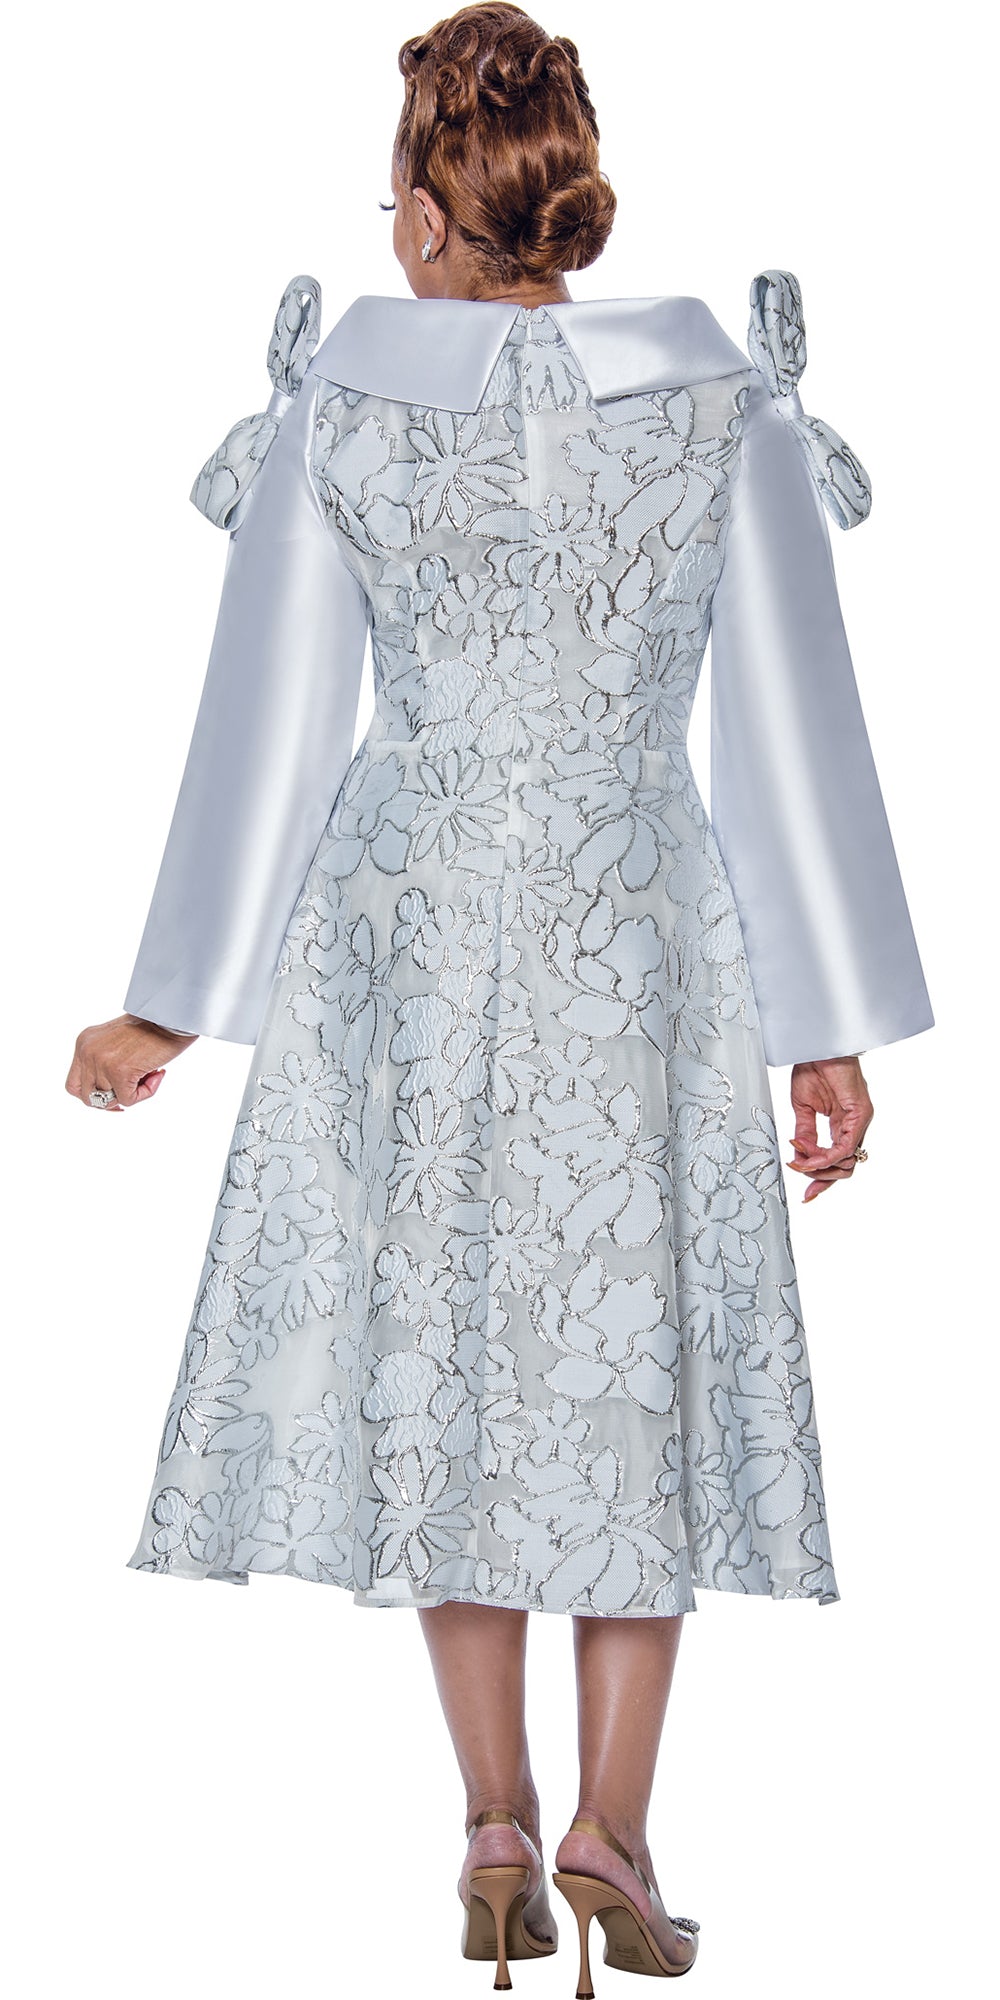 Dorinda Clark Cole 5341 - White Silver - Twill Print Dress with Portrait Collar